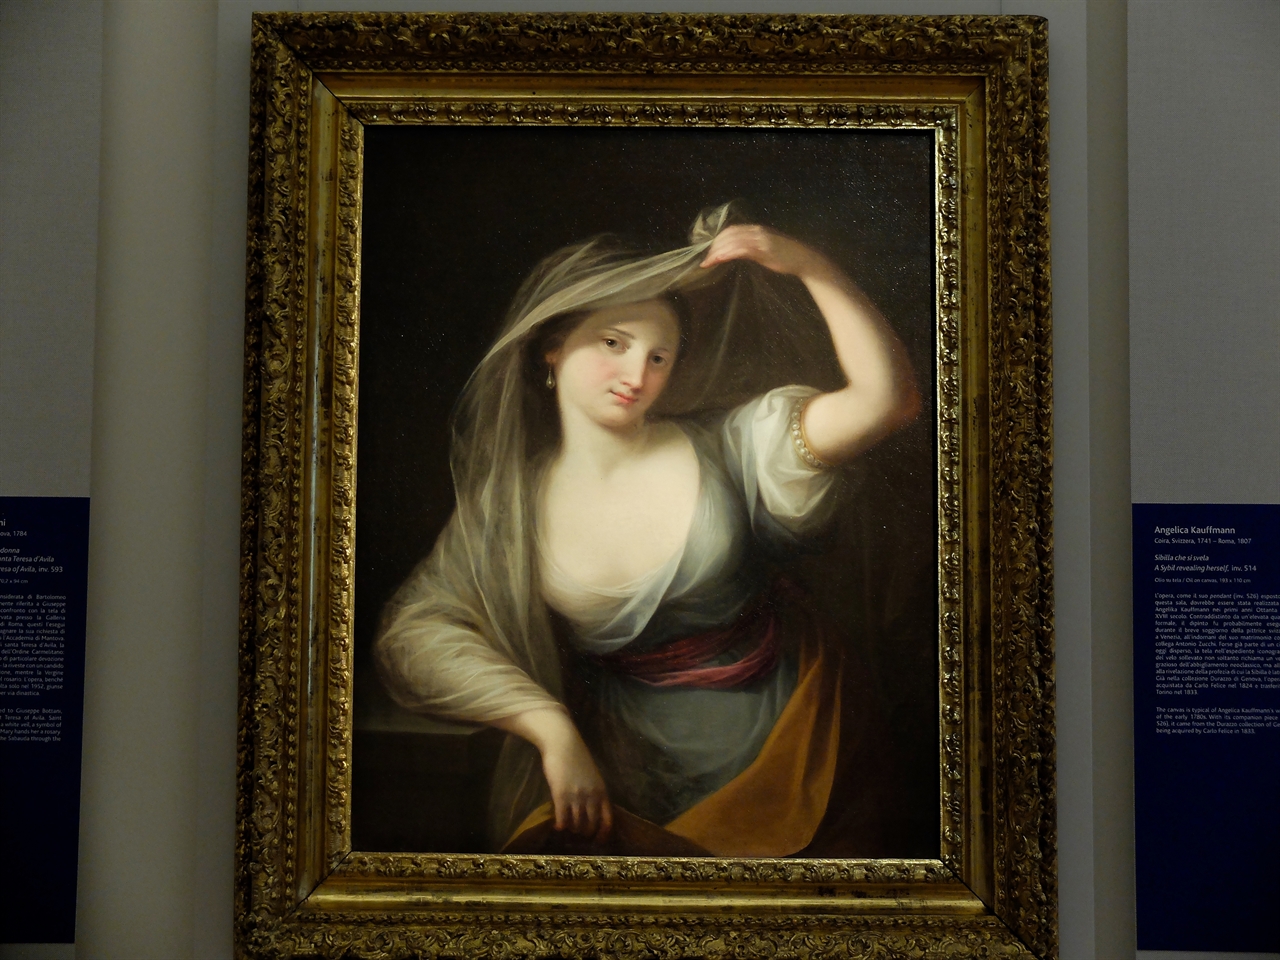 안젤리카 카우프만, '정체를 드러낸 무녀', 토리노 사바우다 미술관. 18세기, 신고전주의 시대 가장 성공한 여성 화가였던 안젤리카 카우프만의 작품입니다.